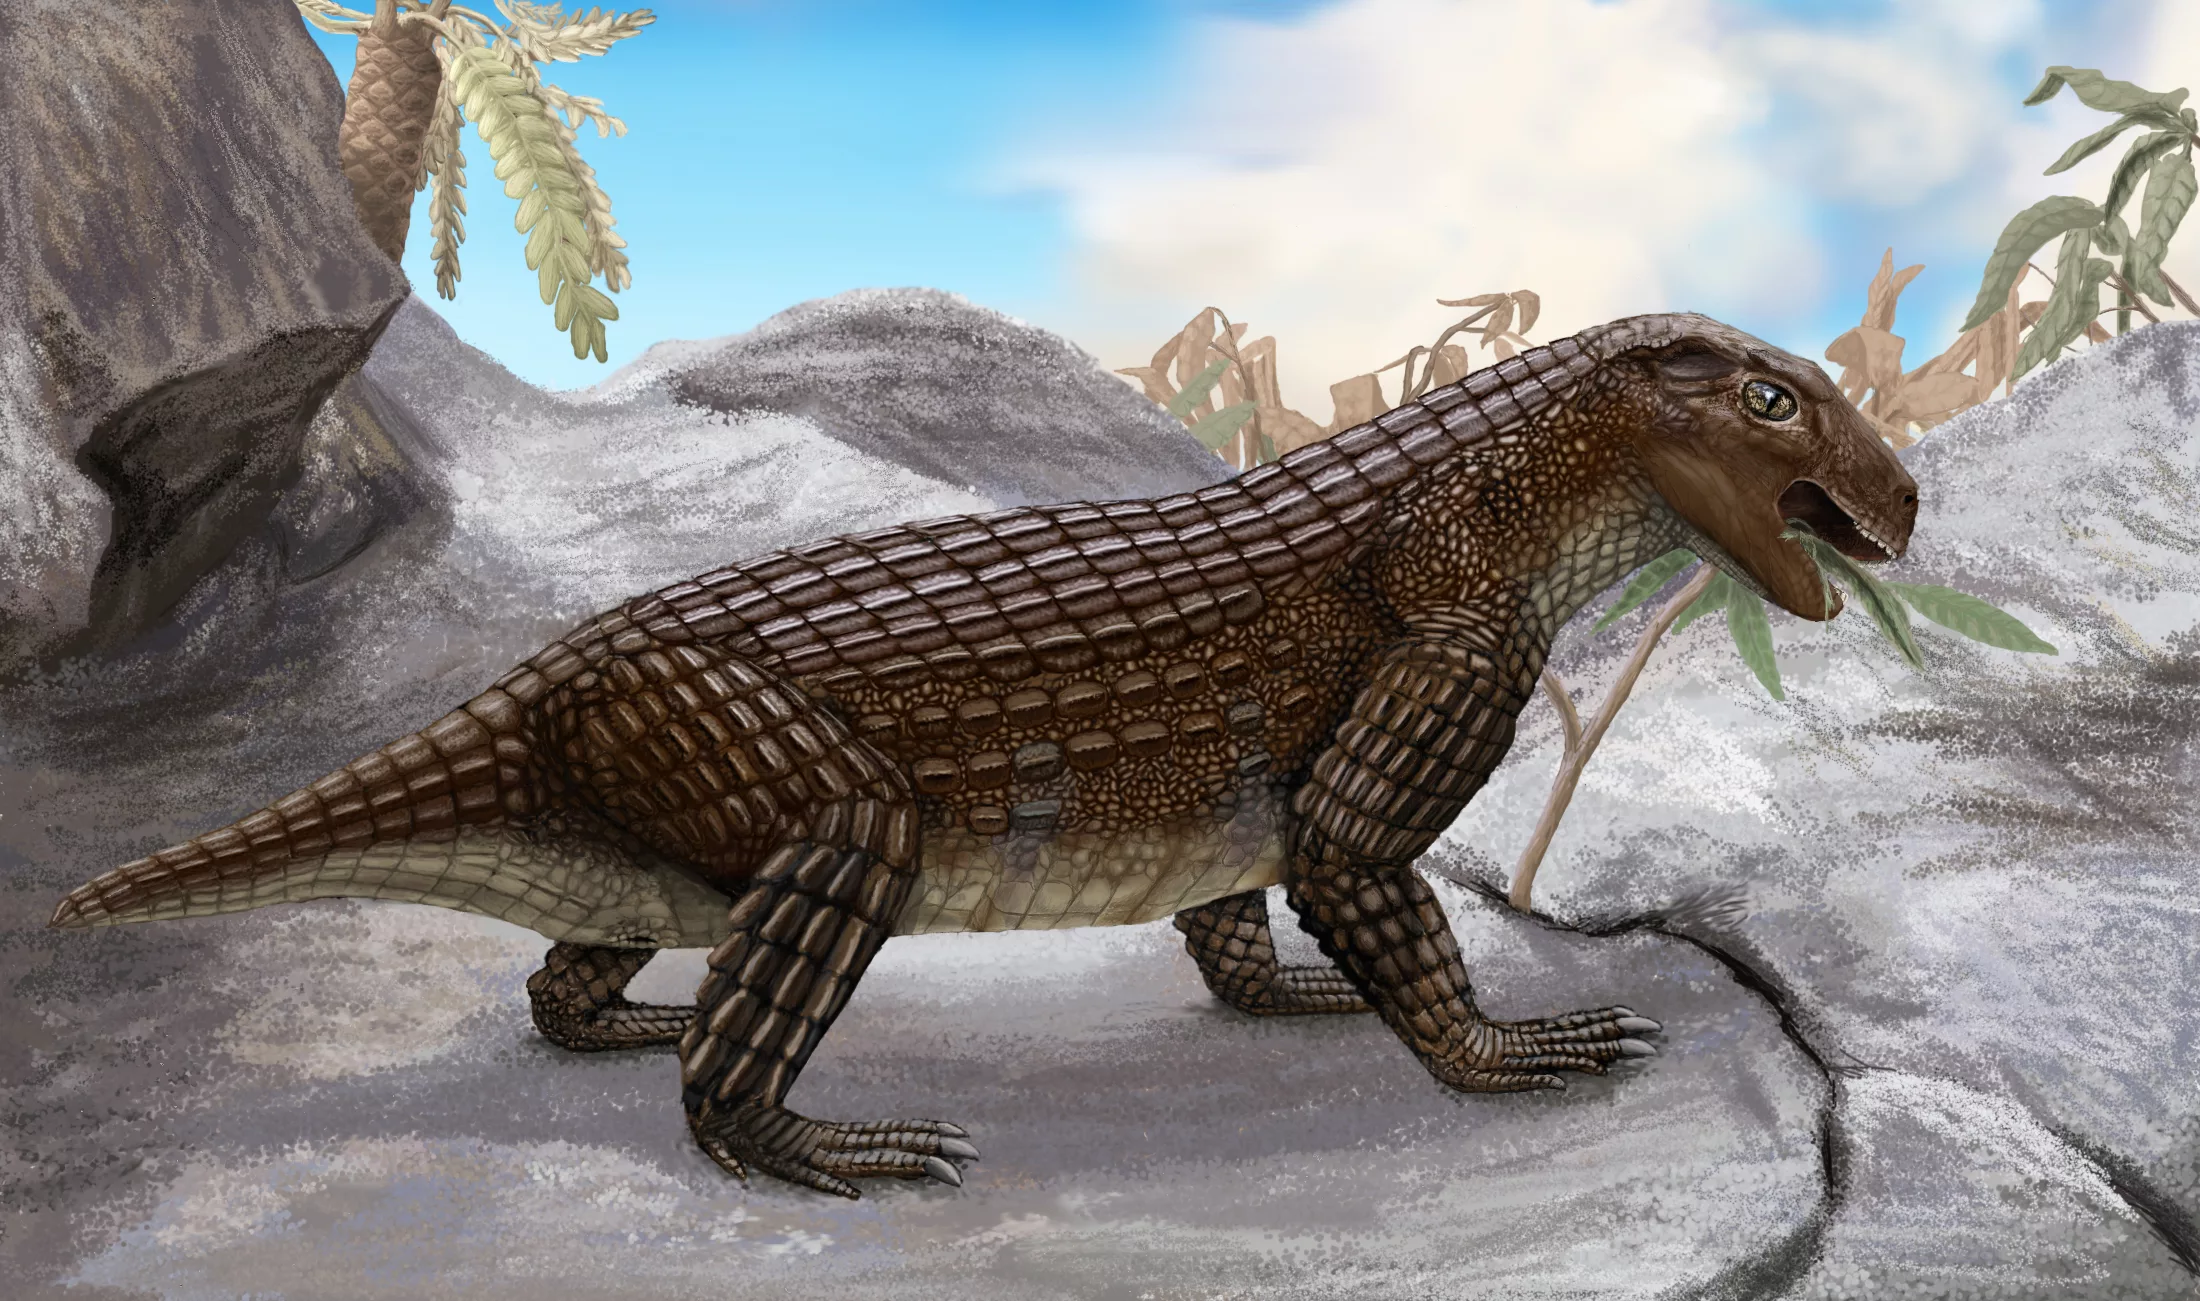 Вымерший ящер. Древний крокодил дейнозух. Вымершие крокодиломорфы. Simosuchus clarki. Крокодиломорфы мезозоя.